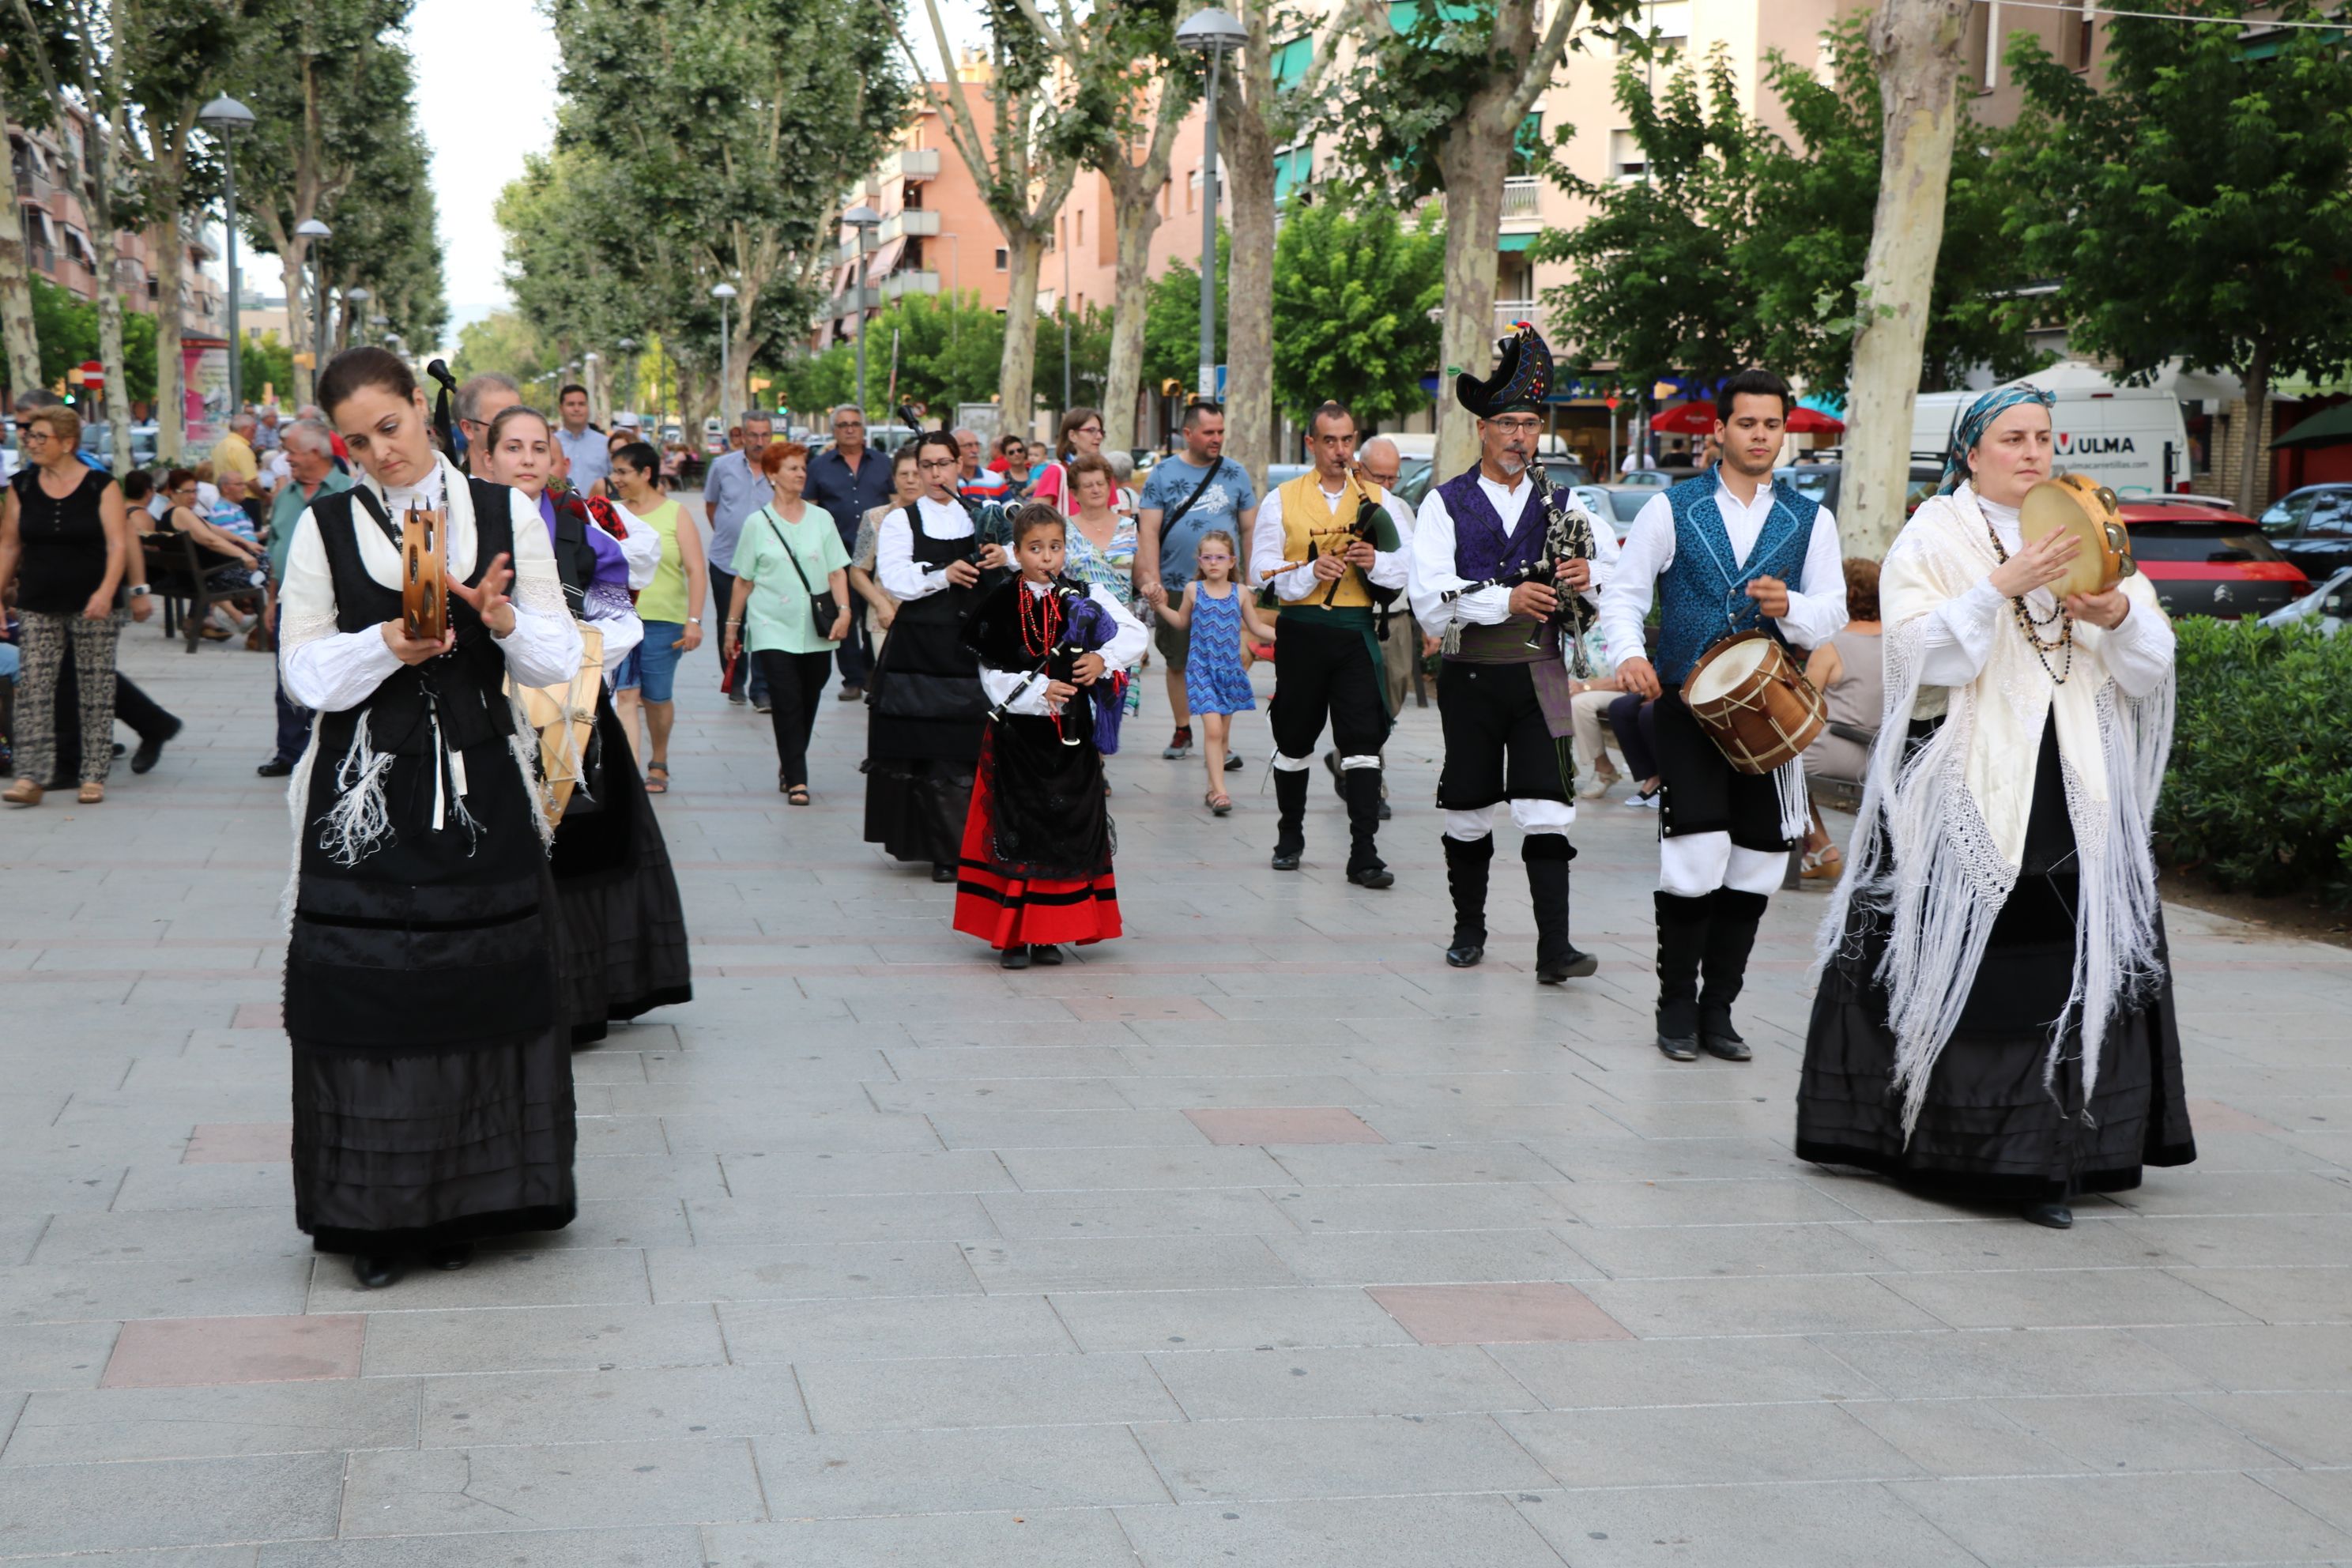 Aquest cap de setmana se celebra la 21a Festa Galega organitzada per Alborada